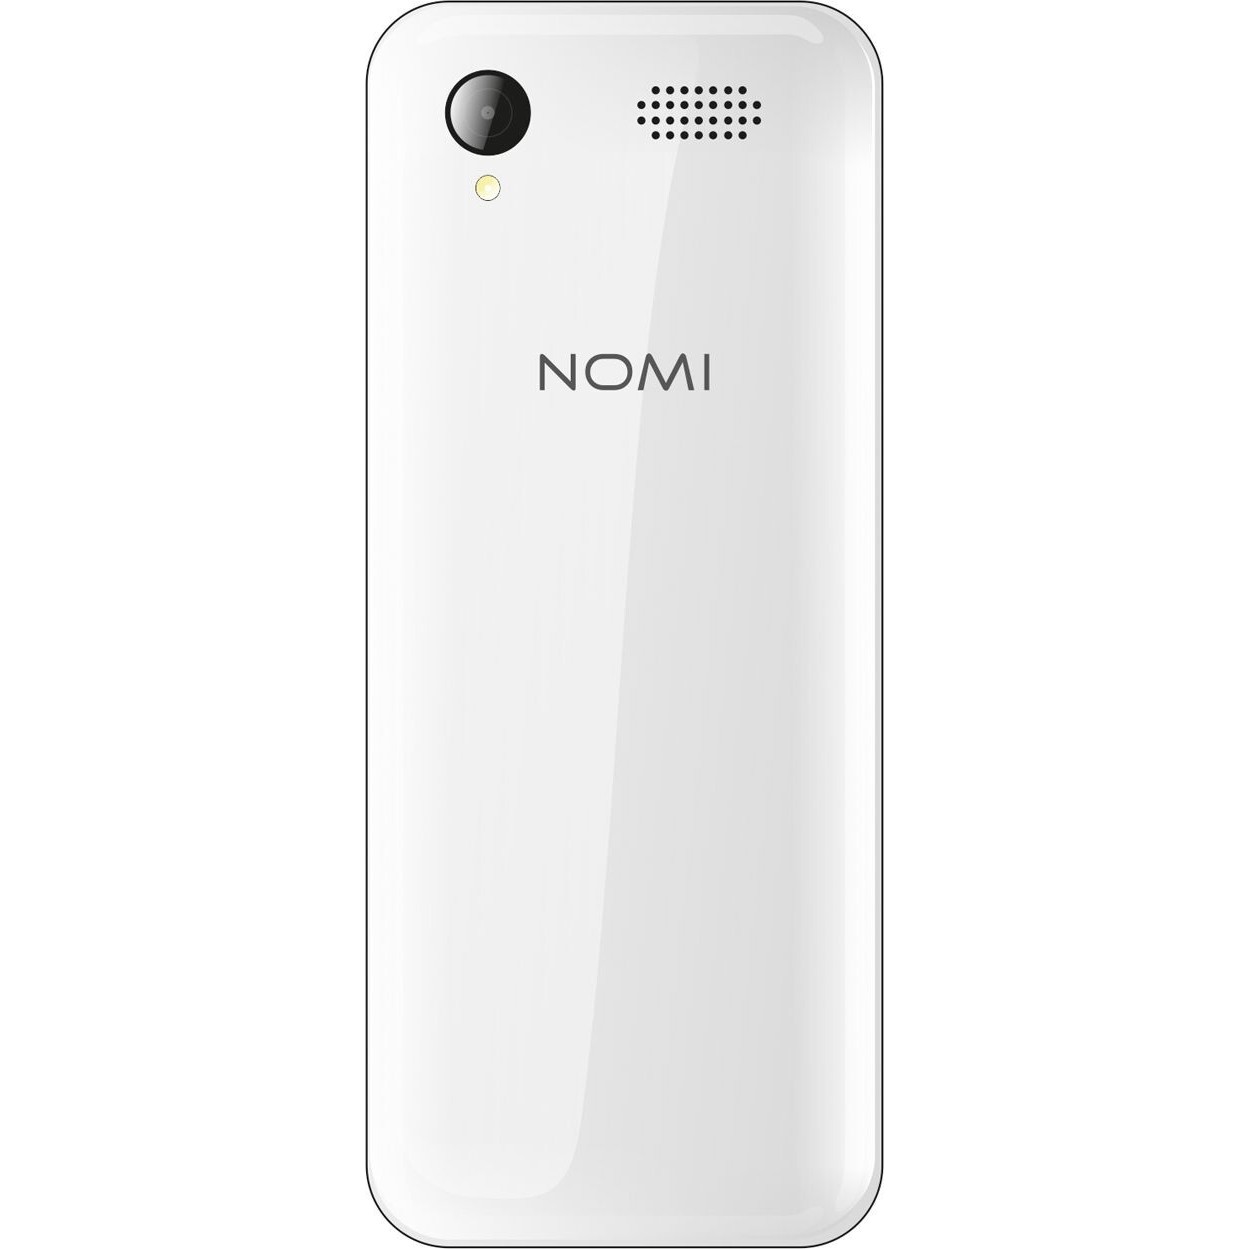 Мобильный телефон Nomi i2410